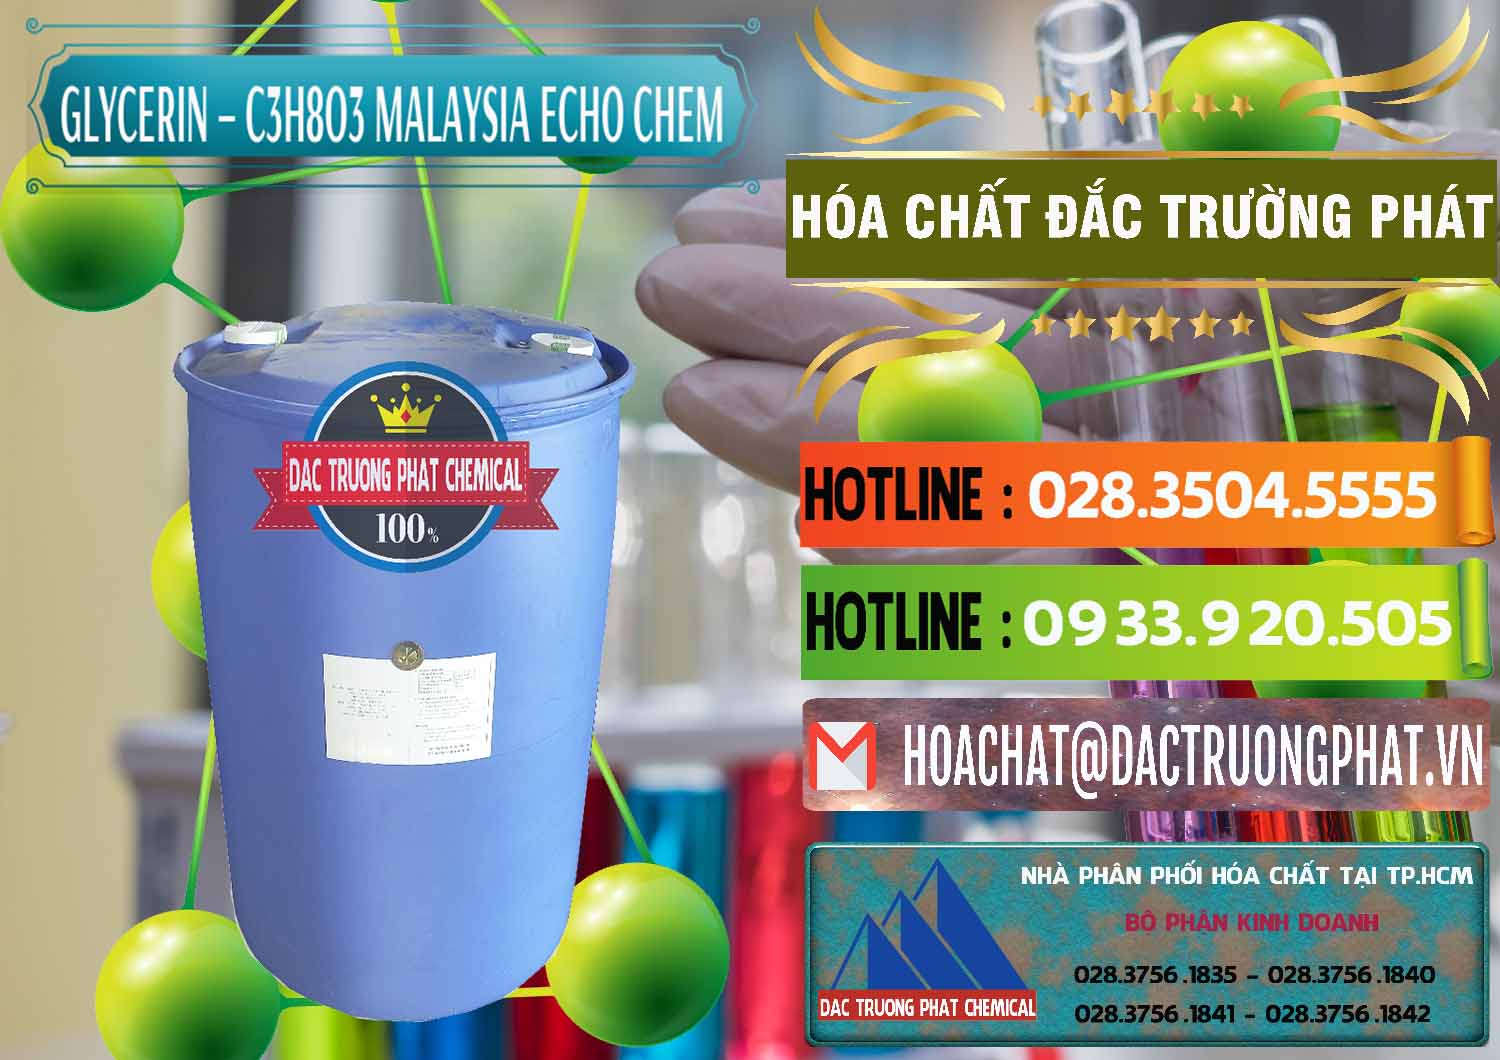 Cty chuyên kinh doanh & bán Glycerin – C3H8O3 99.7% Echo Chem Malaysia - 0273 - Đơn vị cung cấp ( nhập khẩu ) hóa chất tại TP.HCM - cungcaphoachat.com.vn